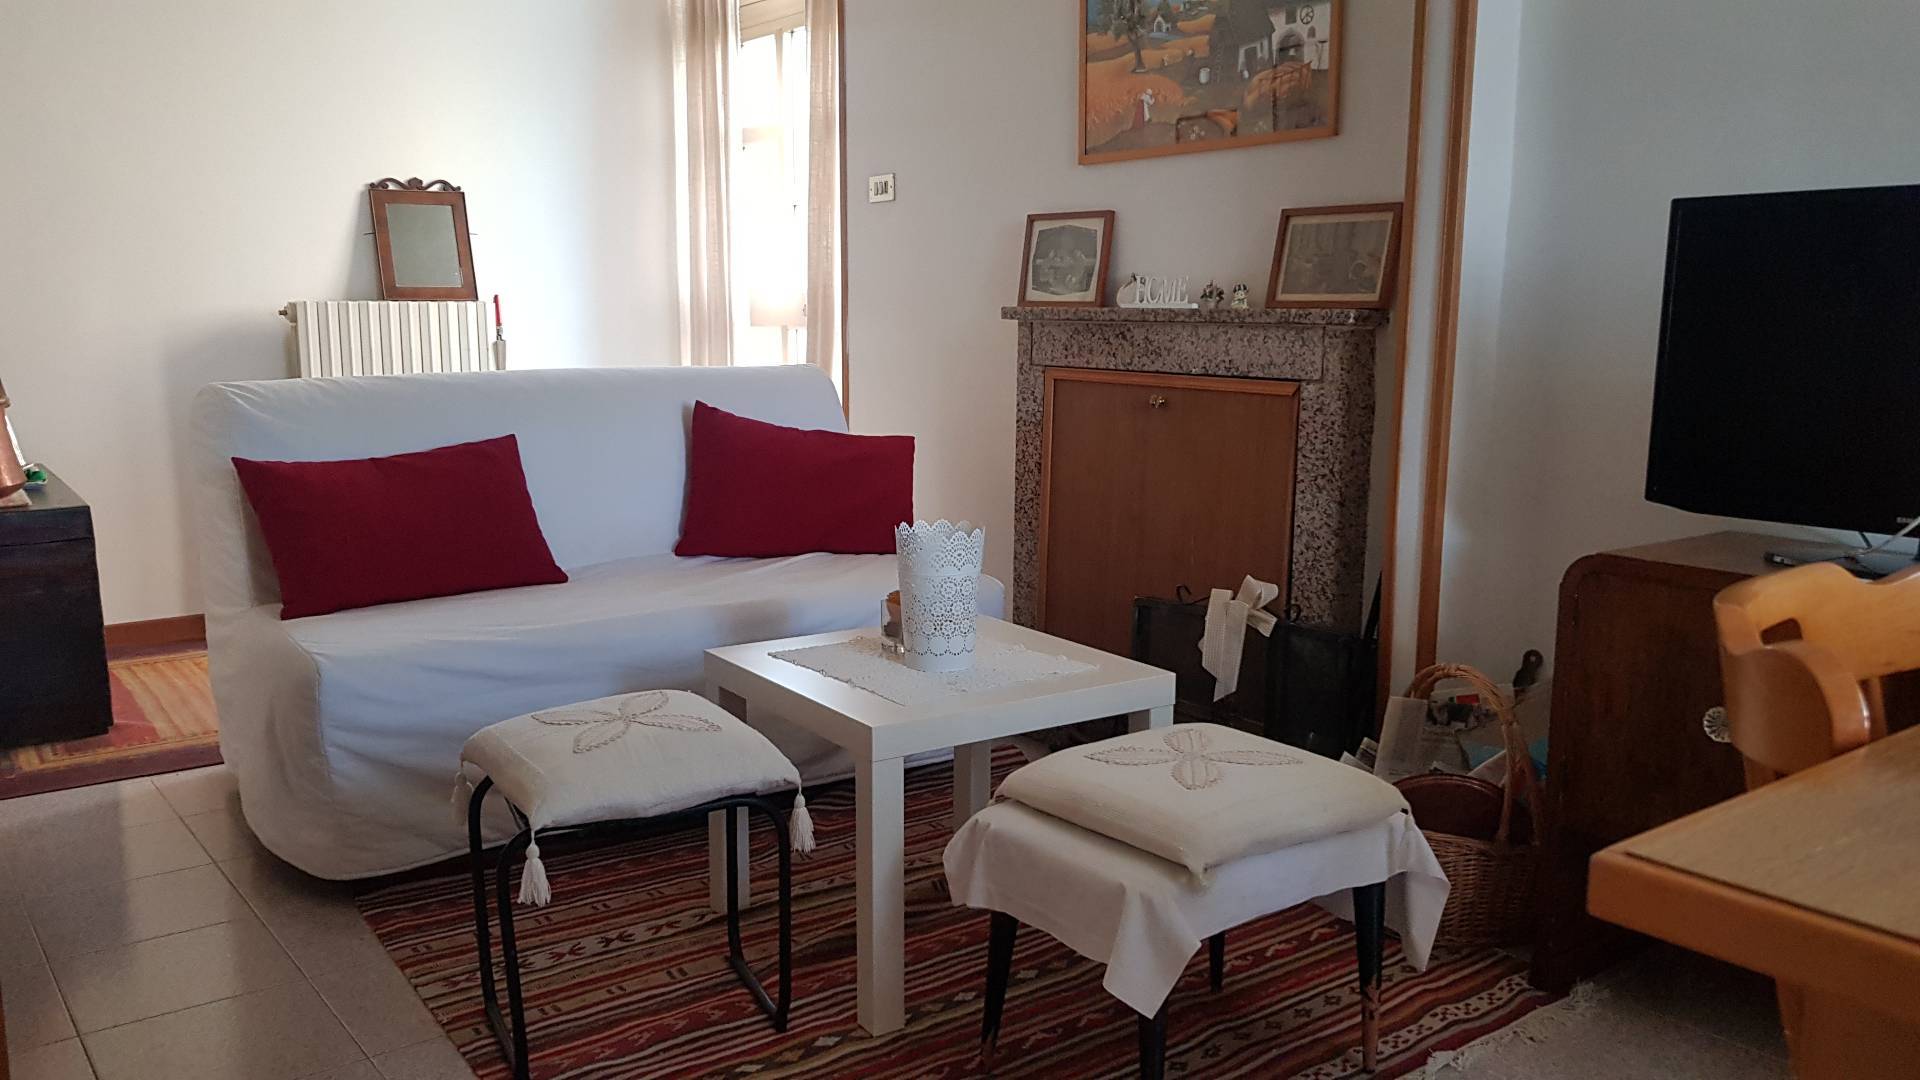 Appartamento in affitto a Venarotta, 2 locali, prezzo € 300 | CambioCasa.it